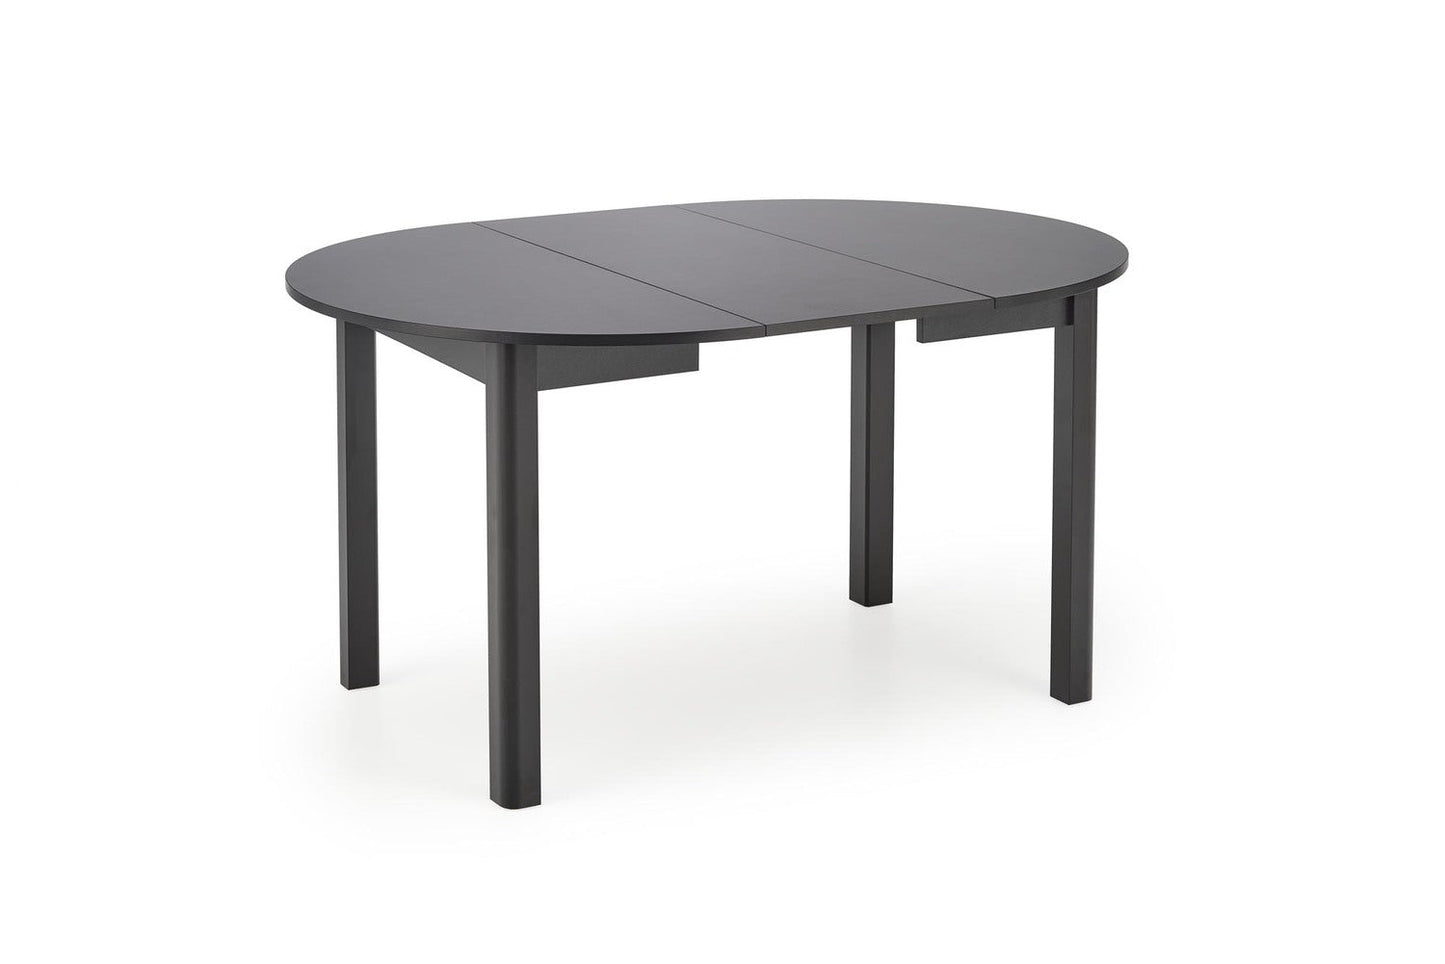 RN galda krāsu augsts melns, kājas - melnas (102-142x102x76 cm)